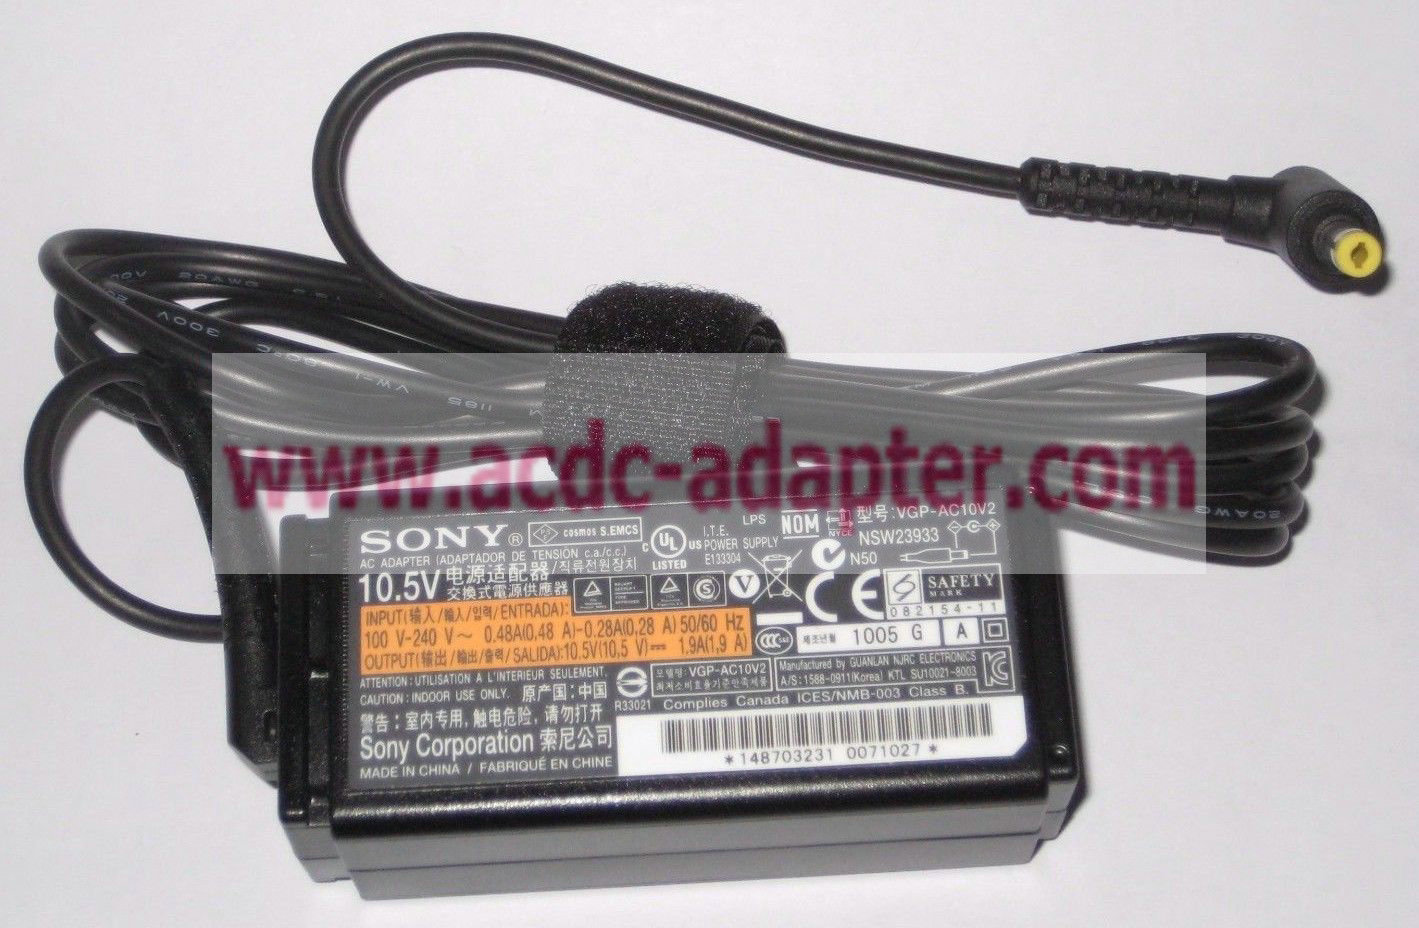 New Sony VGP-AC10V2 10.5v 1.9A Laptop Power DC Adapter